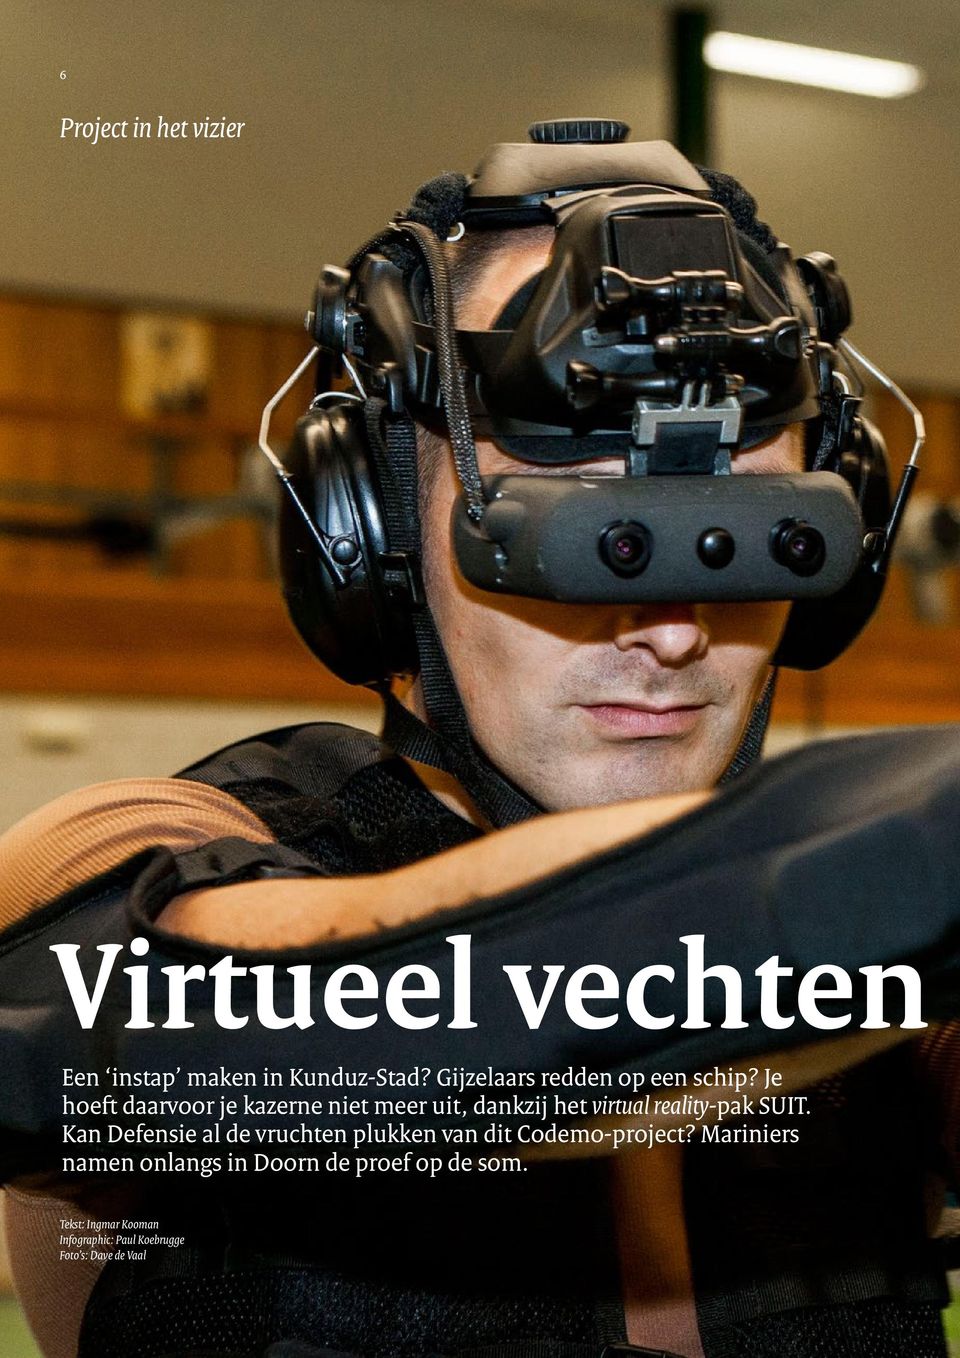 Je hoeft daarvoor je kazerne niet meer uit, dankzij het virtual reality-pak SUIT.